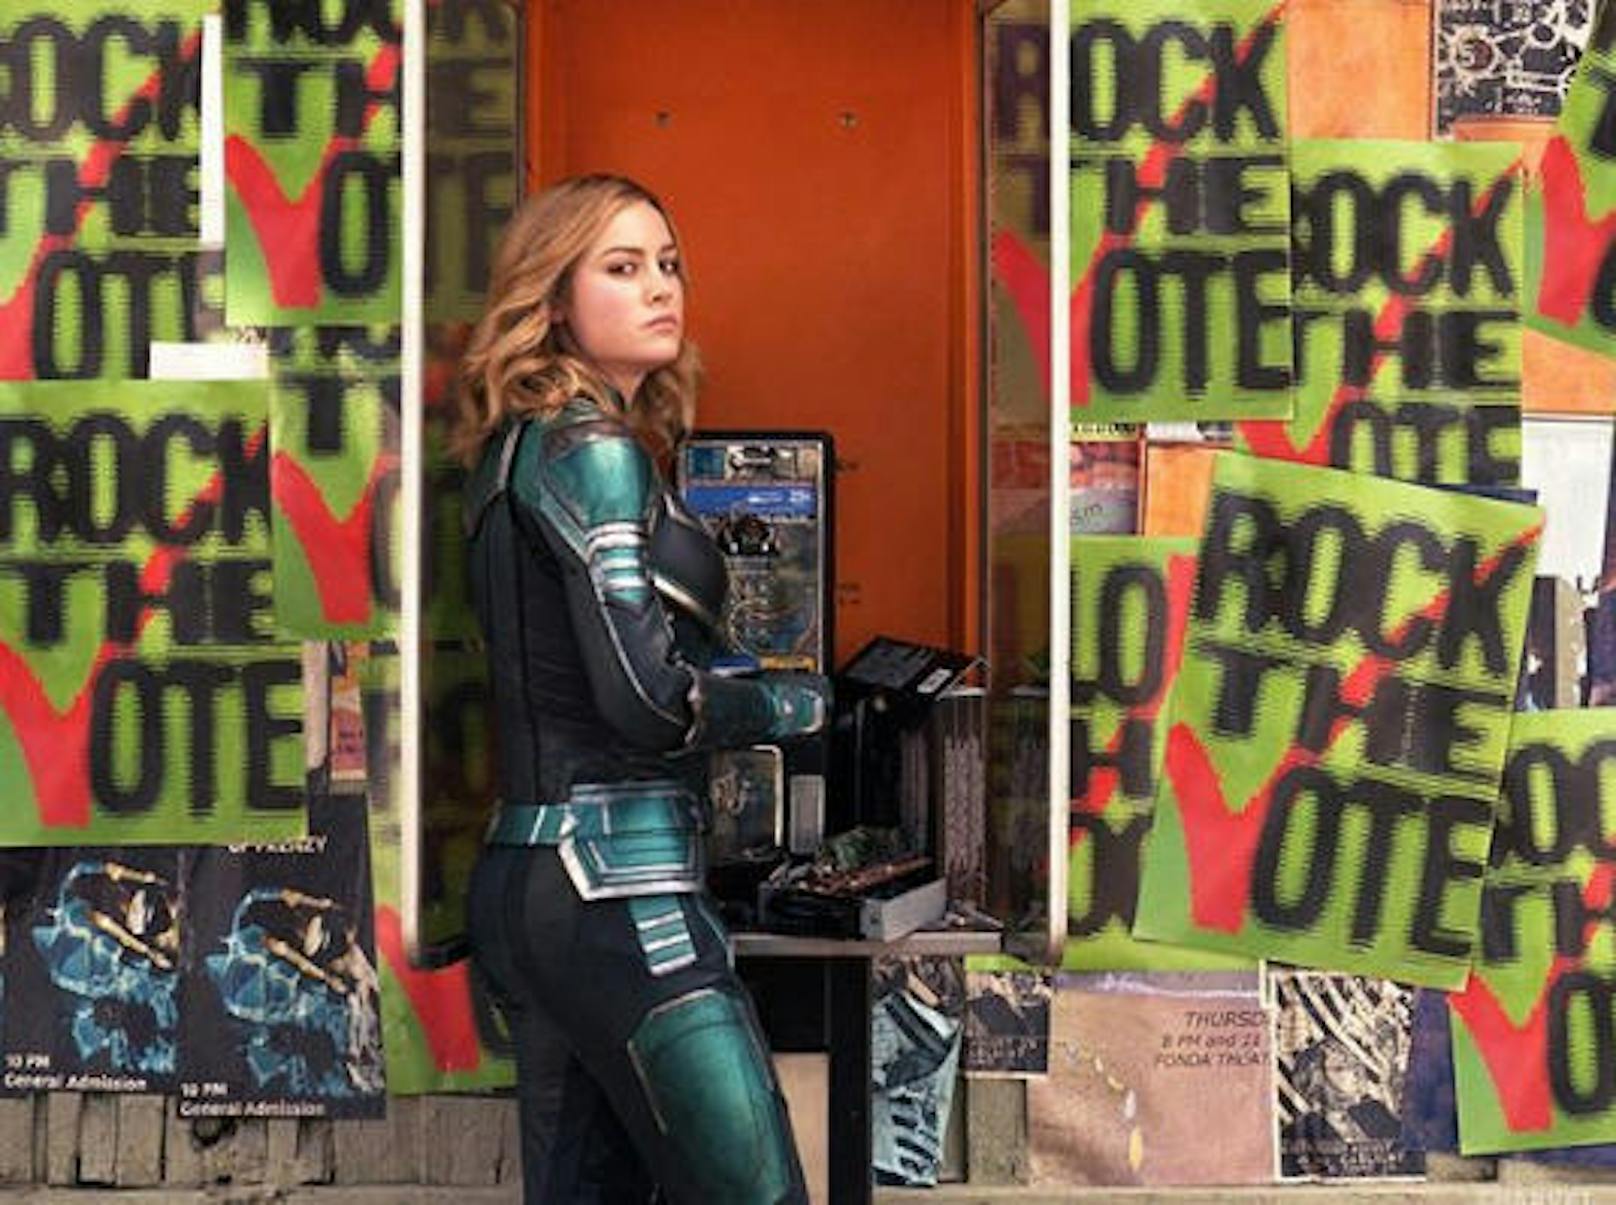 08.11.2018: Peinlicher Fehler im Hause Disney. Brie Larson postete ein Szenenfoto aus "Captain Marvel" vorab. Die Telefonnummer auf dem Münzfernsprecher stellte sich als Telefonsex-Hotline heraus. Wie das passieren konnte? So viel Geld im Hause Disney und trotzdem hat jemand die Rechnung nicht bezahlt :)